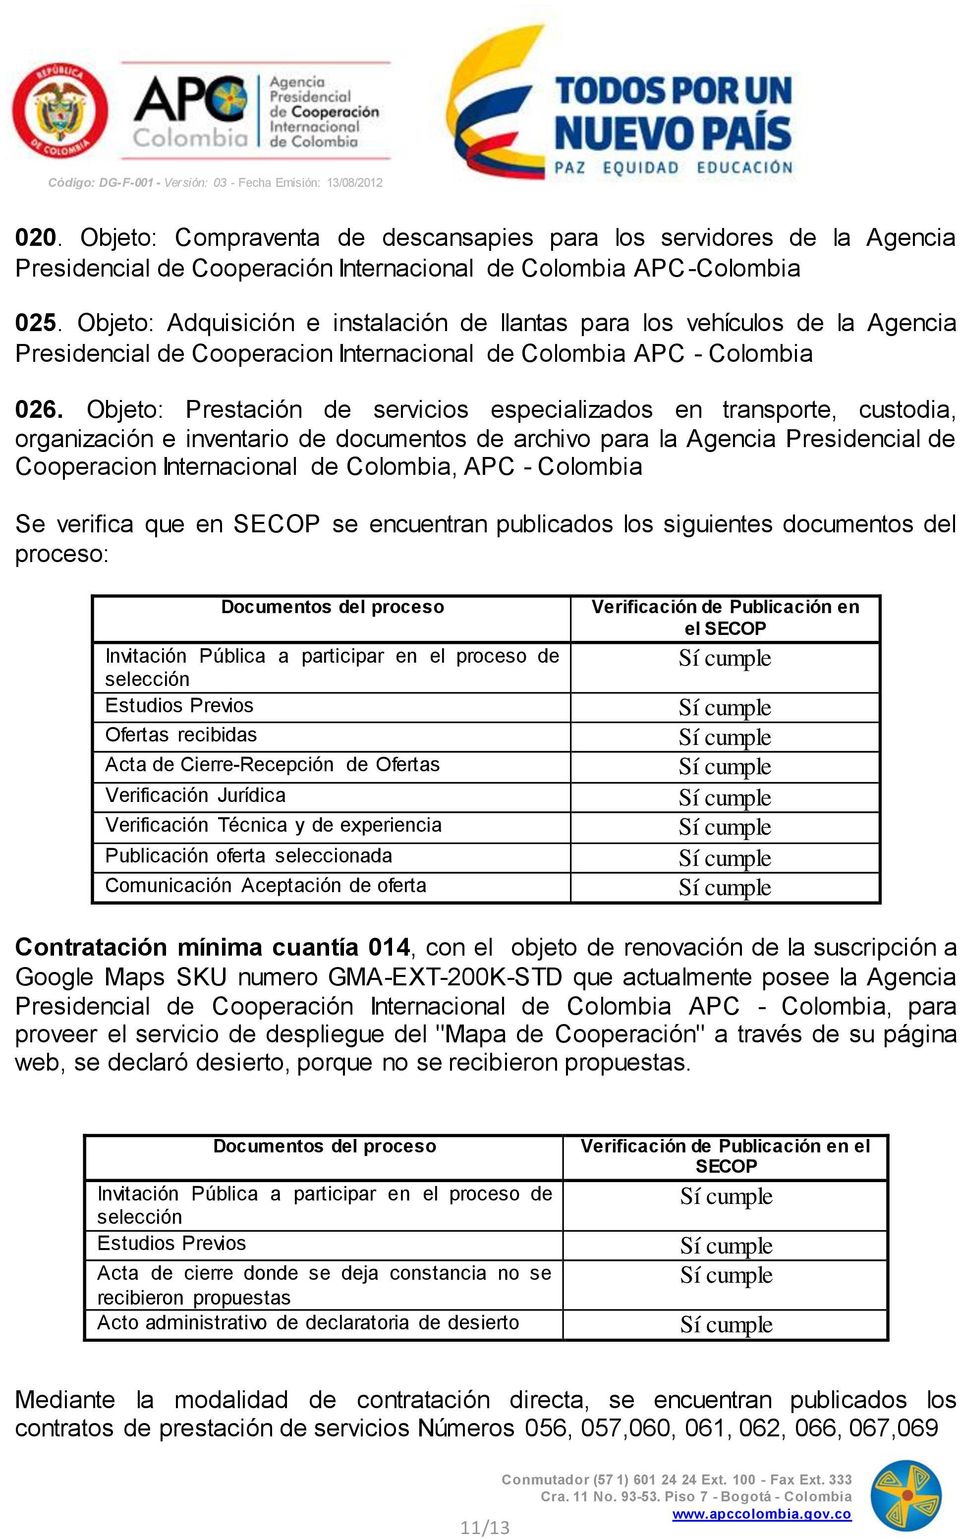 Objeto: Prestación de servicios especializados en transporte, custodia, organización e inventario de documentos de archivo para la Agencia Presidencial de Cooperacion Internacional de Colombia, APC -